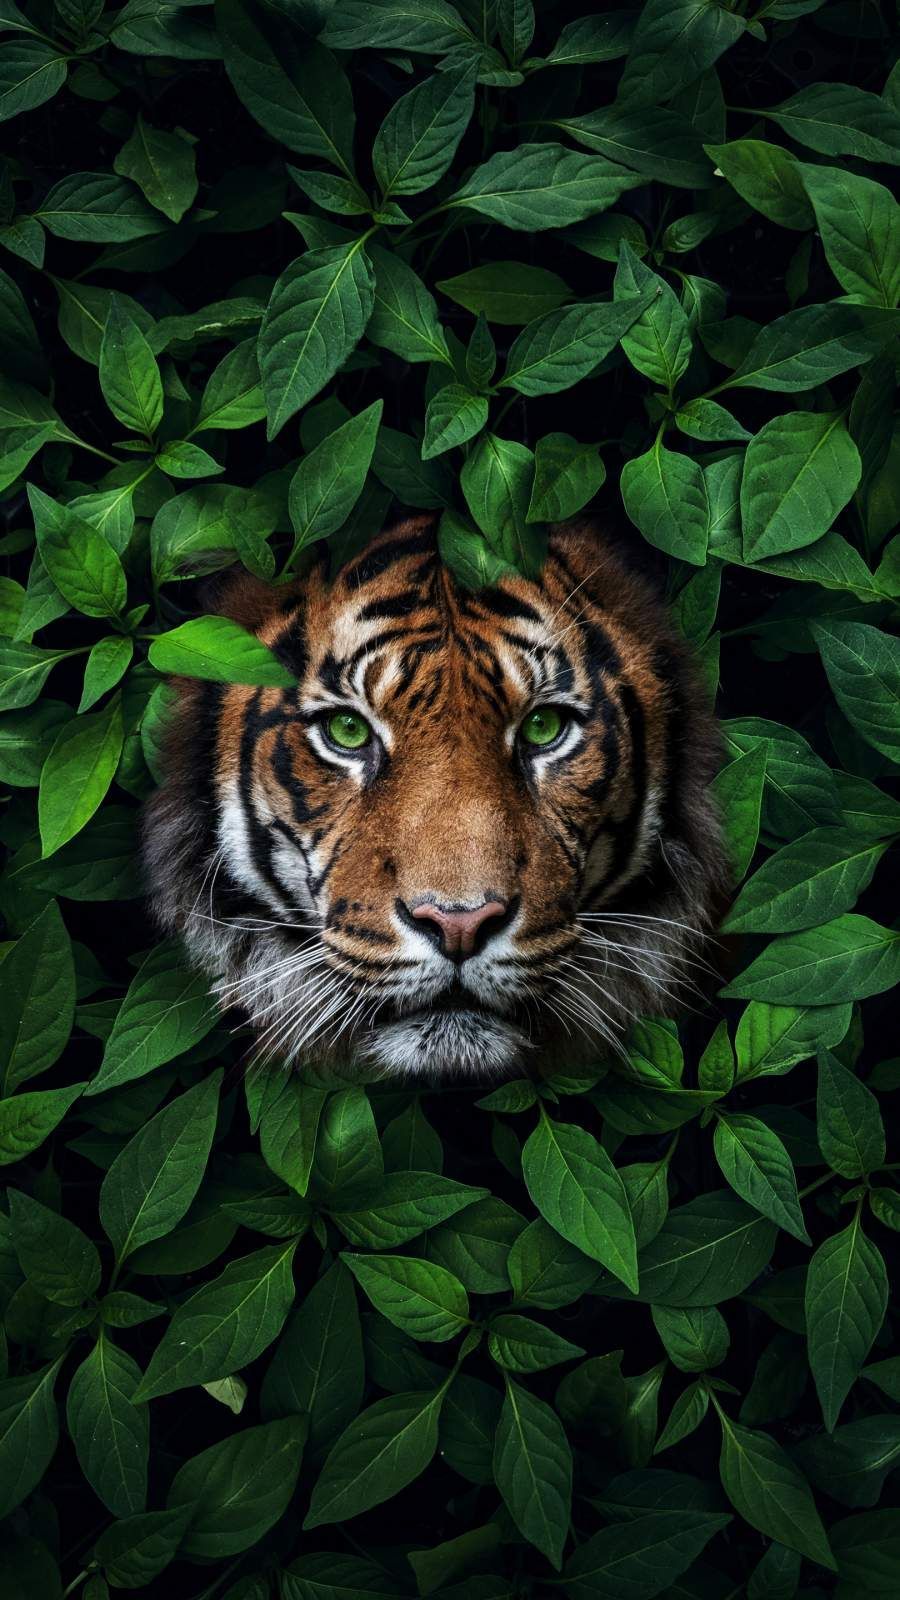 Green Eyes Tiger iPhone Wallpaper. Wild animal wallpaper, Animal wallpaper, Animals